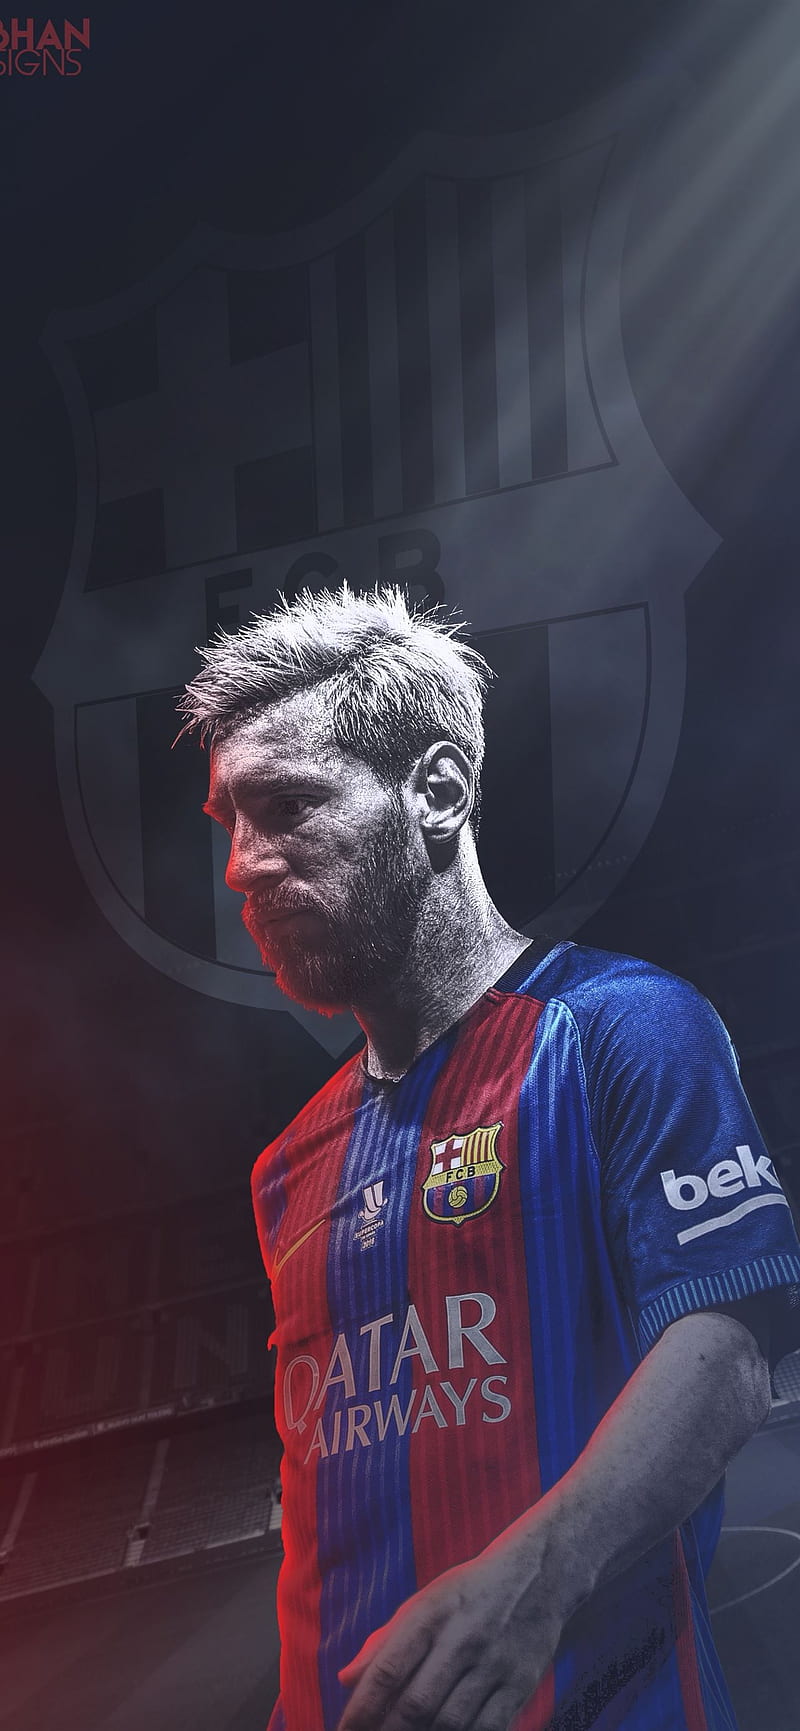 Hình nền FC Barcelona Messi trên iPhone 12 sẽ tạo ra một dấu ấn khó quên trong lòng những fan hâm mộ. Khám phá ngay hình nền để cảm nhận được tính chuyên nghiệp và sự đẳng cấp của câu lạc bộ bóng đá số 1 thế giới.